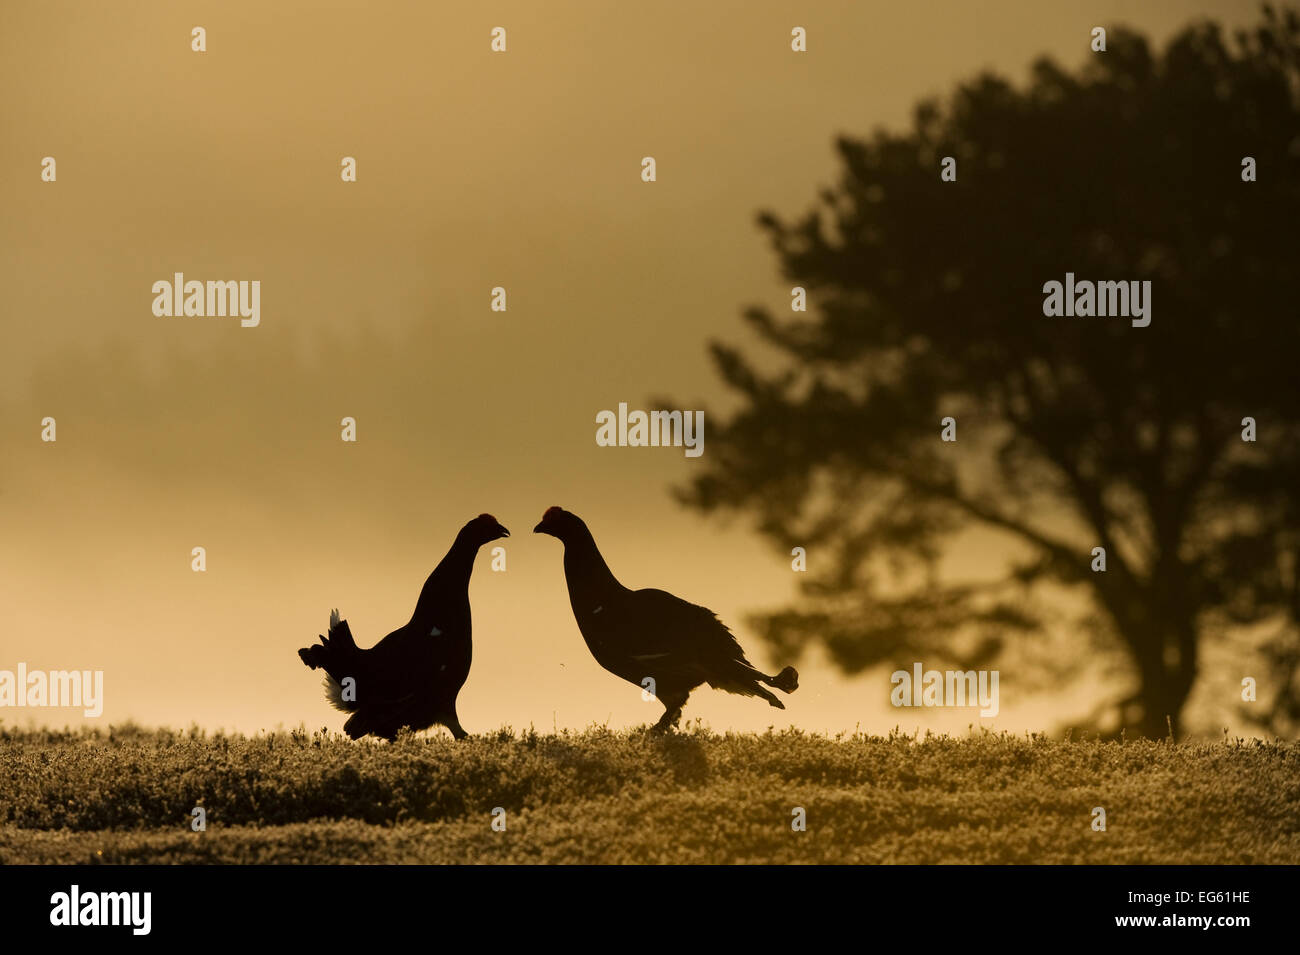 Silhouette de deux hommes Tétras (Tetrao tetrix) affichage à lek à l'aube, NP Cairngorms, Grampian, Ecosse, UK, avril. Années 2020 Livre VISION Plaque. Banque D'Images